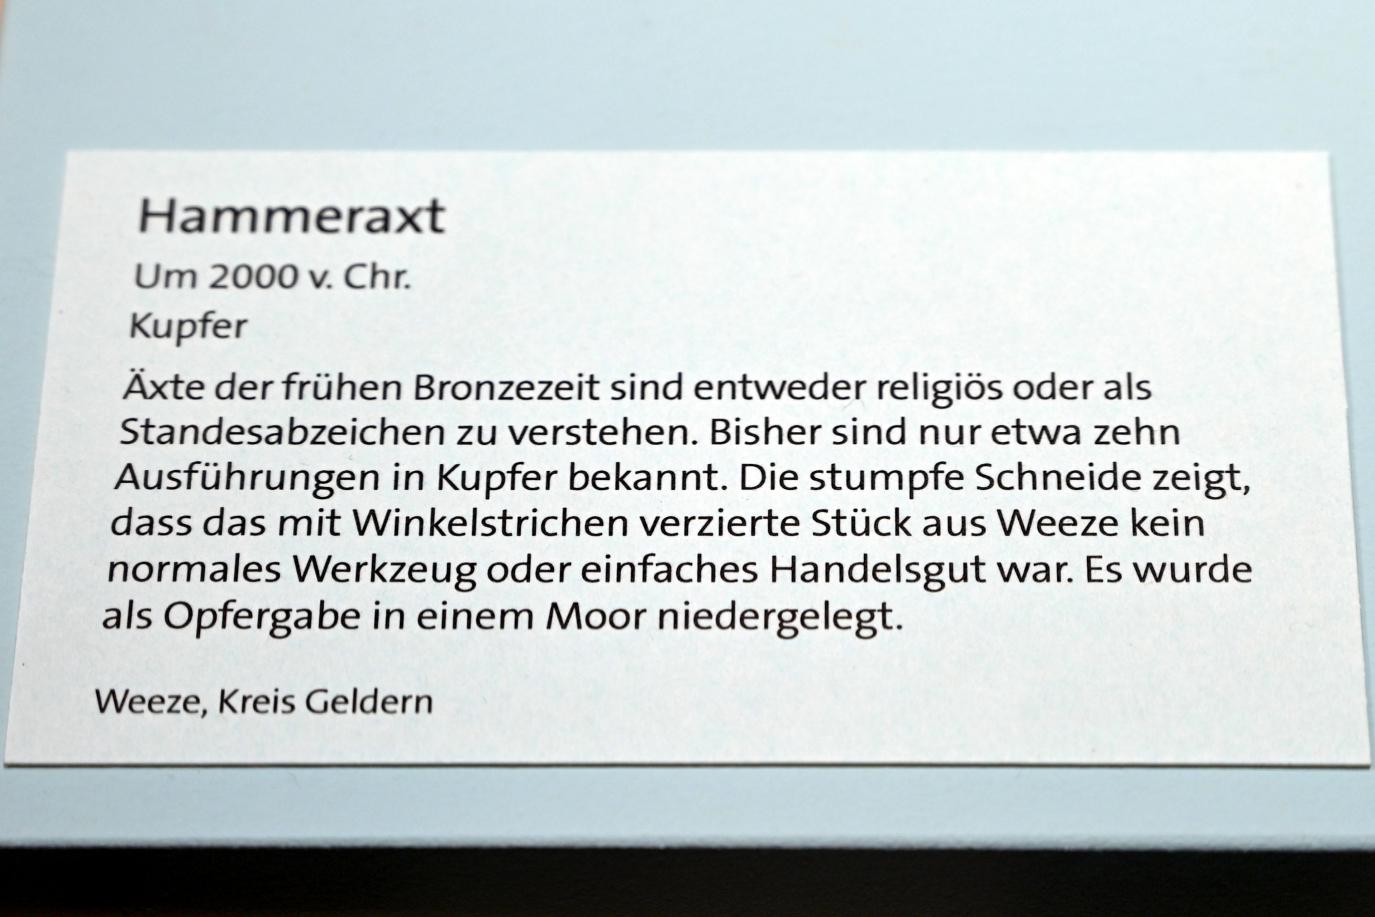 Hammeraxt, Frühe Bronzezeit, 3365 - 1200 v. Chr., 2000 v. Chr., Bild 3/3